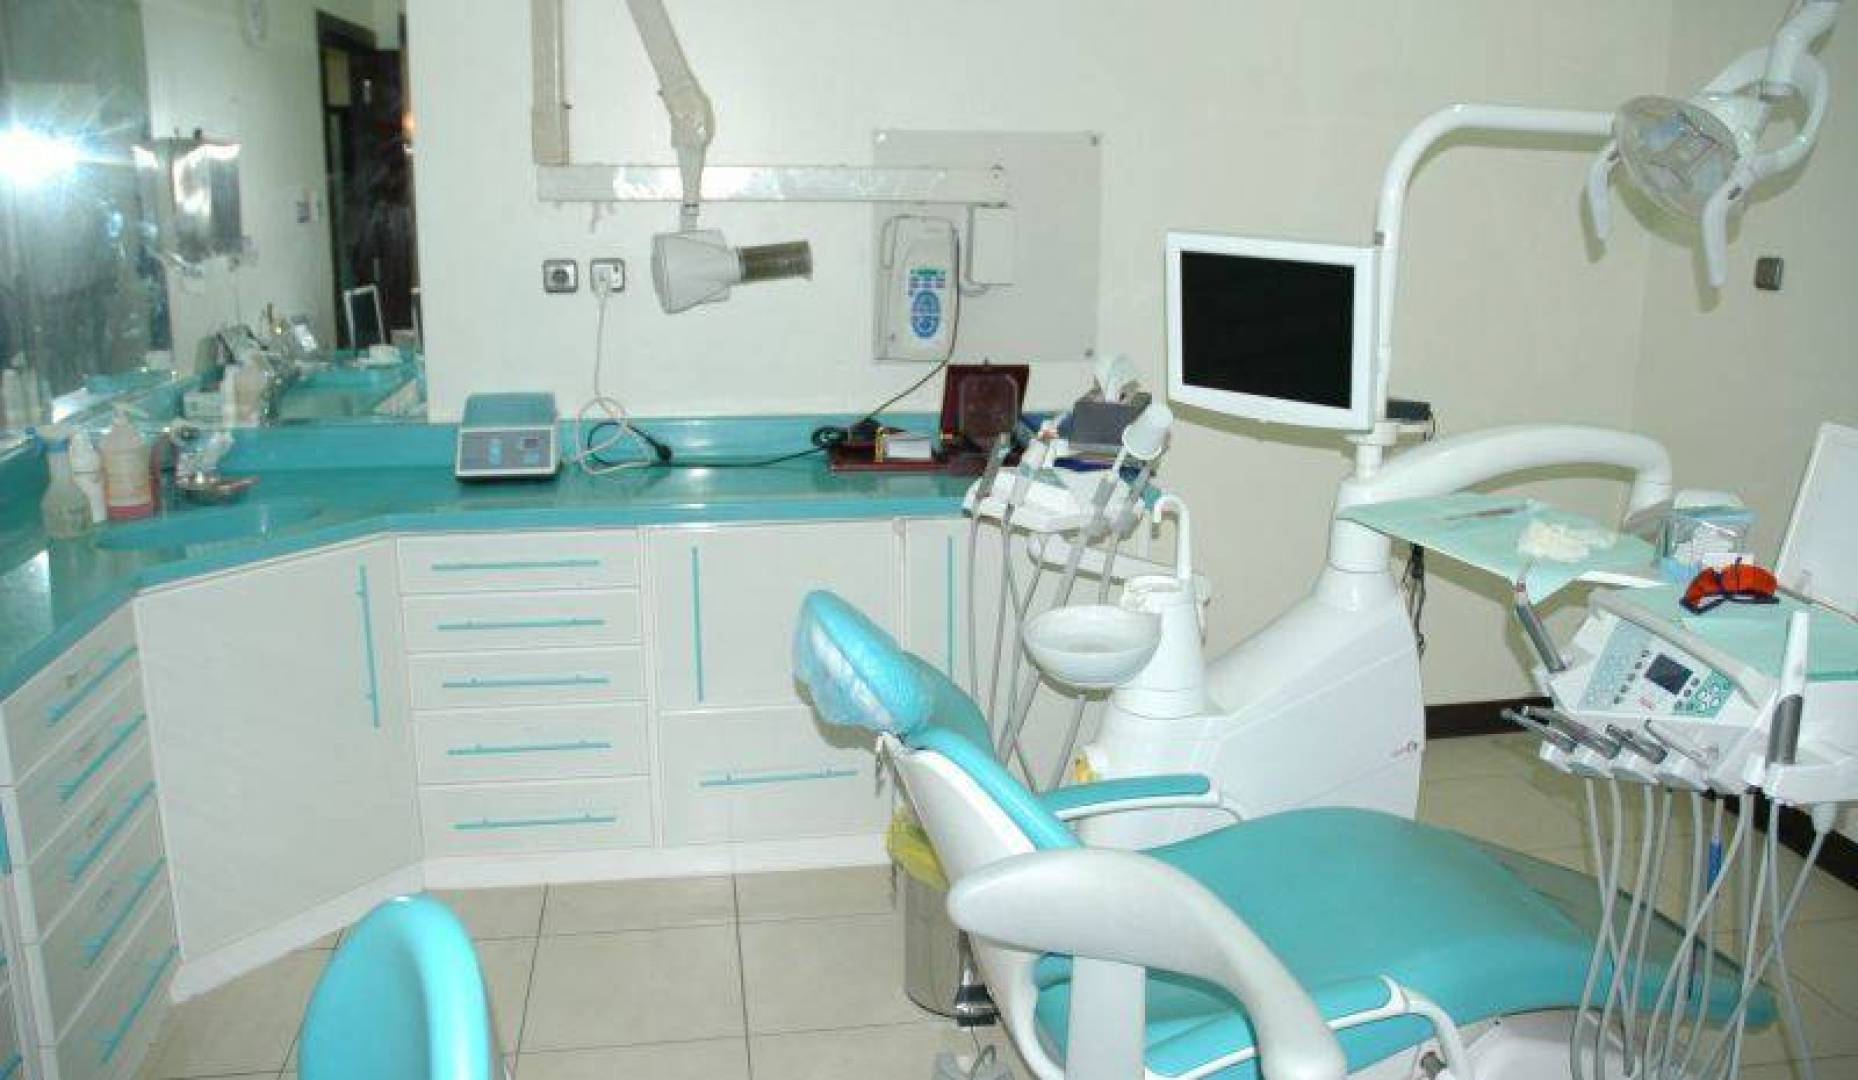 أفضل 9 أطباء أسنان بالمدينة المنورة